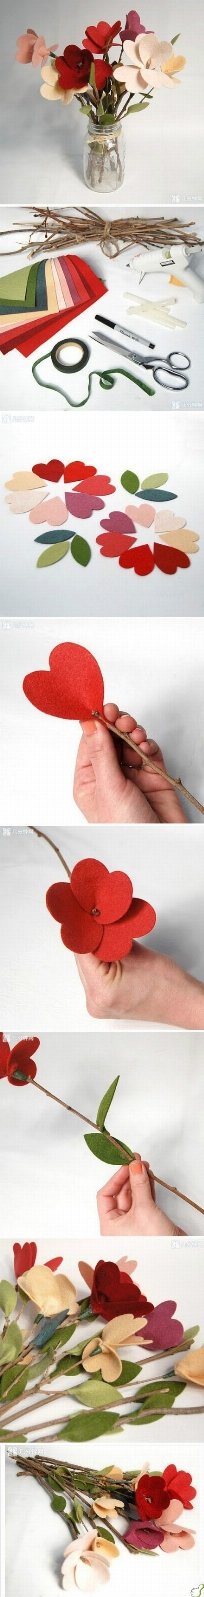 Modular-Heart-Flower_large.jpg